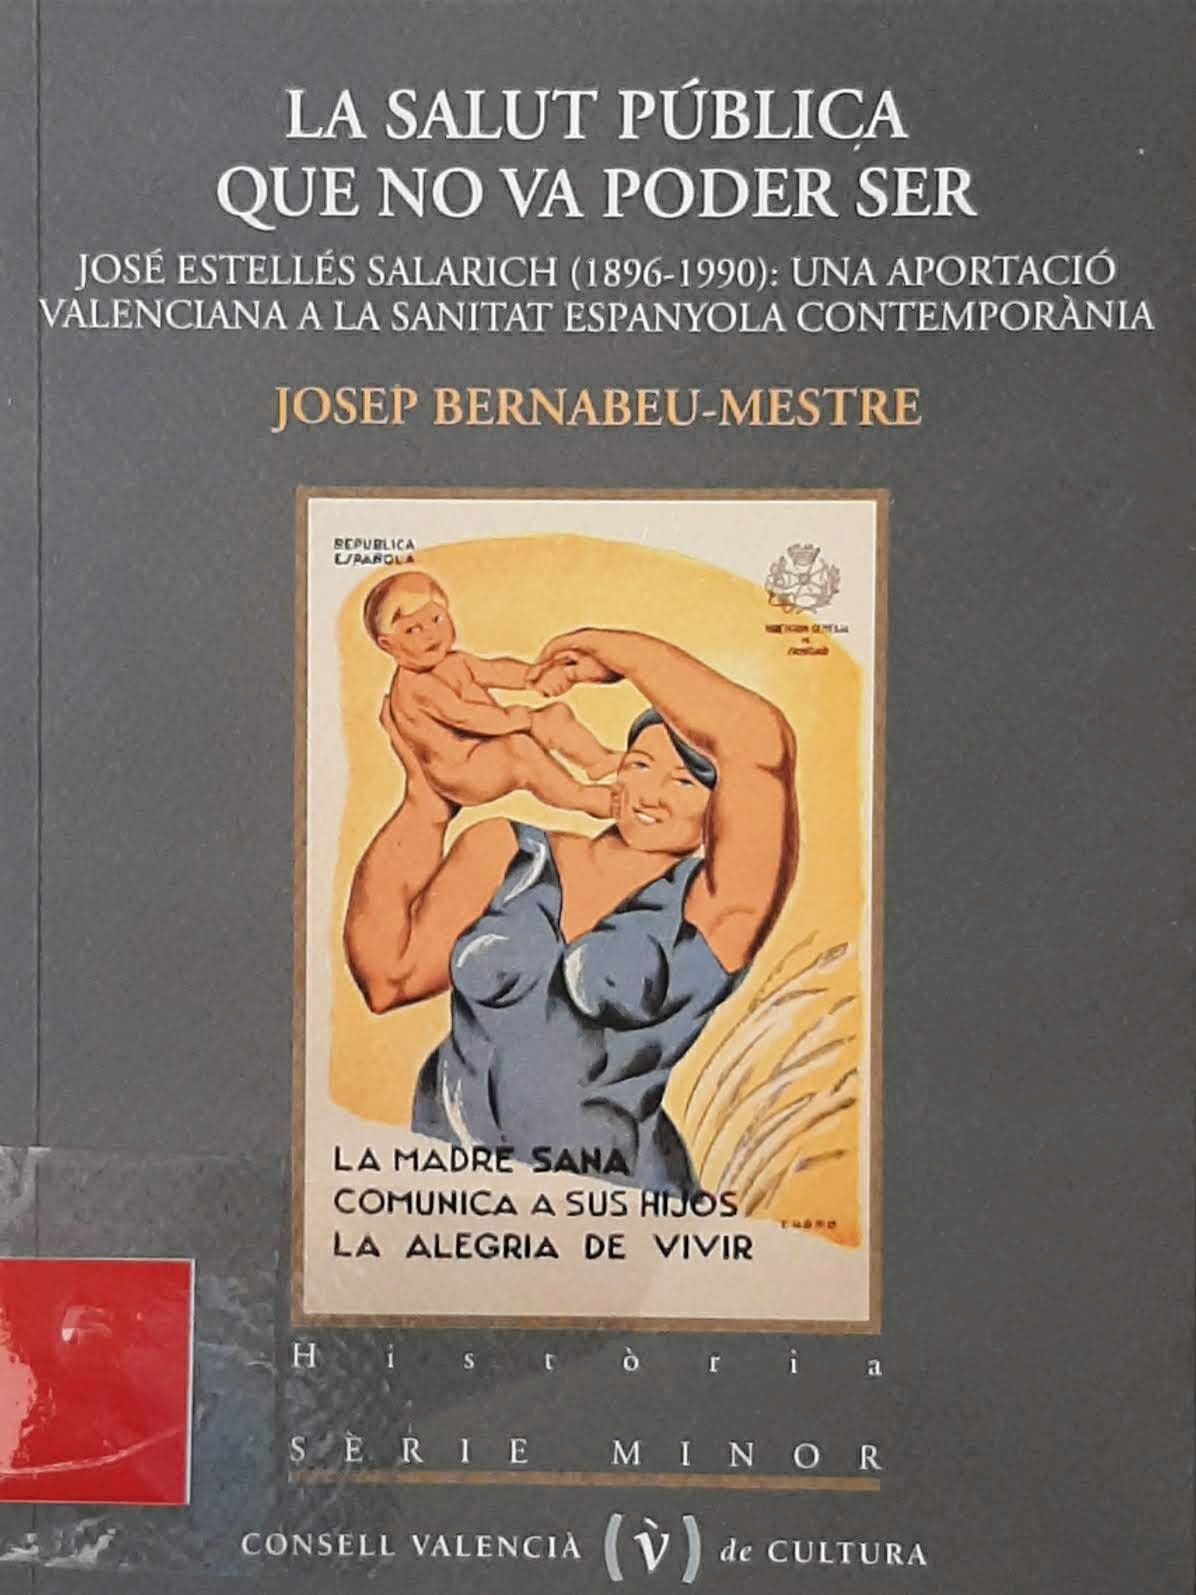 La salut pública que no va poder ser. José Estellés Salarich (1896-1990): Una aportació valenciana a la sanitat espanyola contemporània